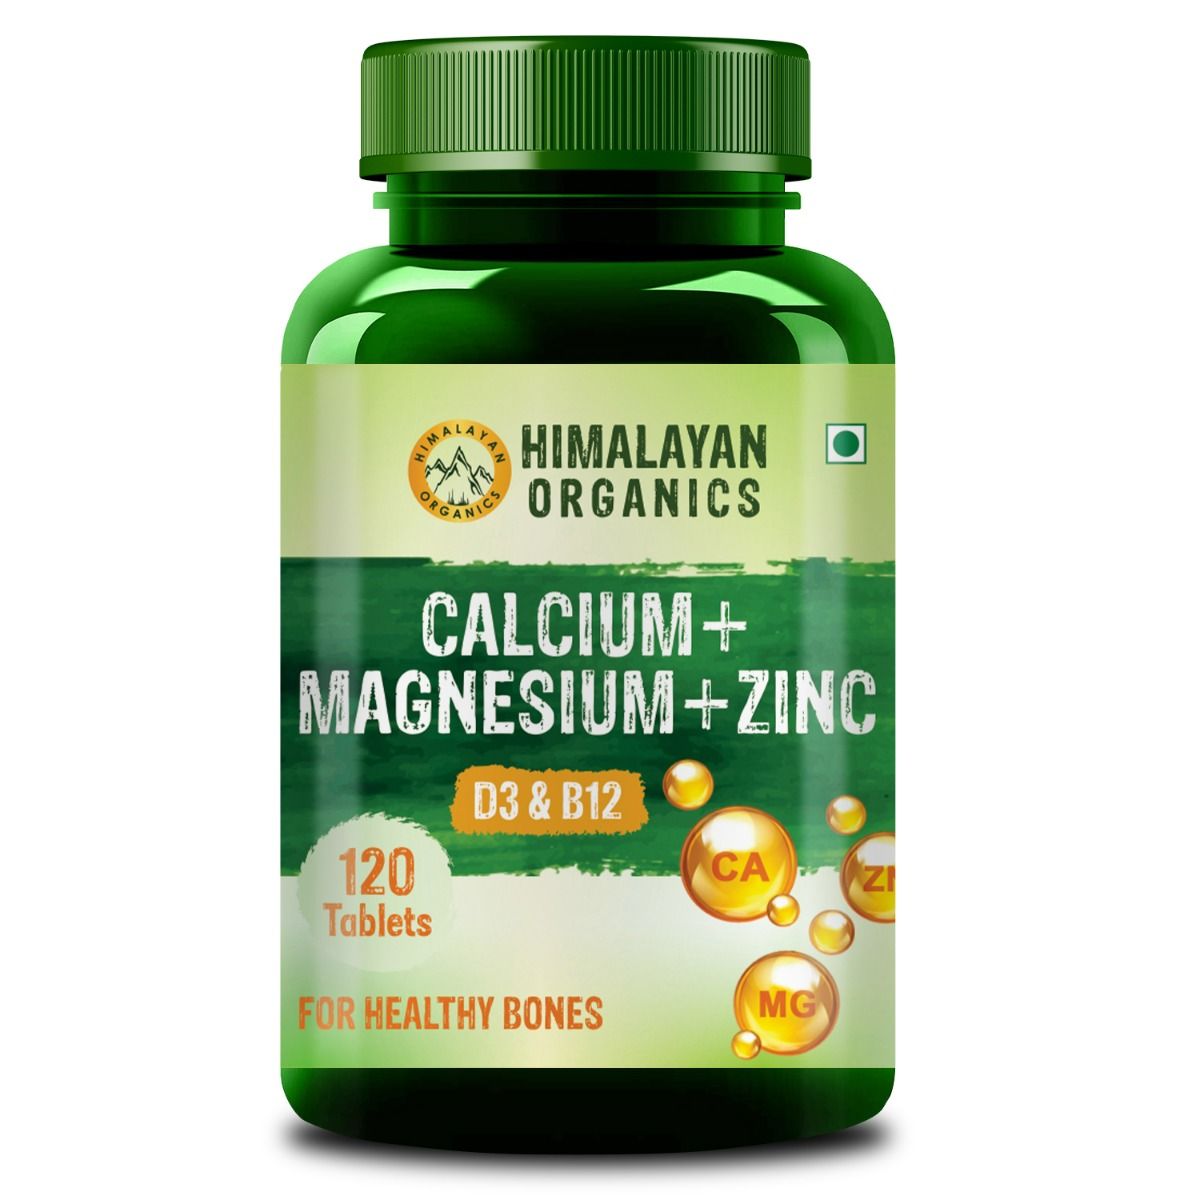 Himalayan Organics Calcium+Magnesium+Zinc, 120 Tablets, Pack of 1 